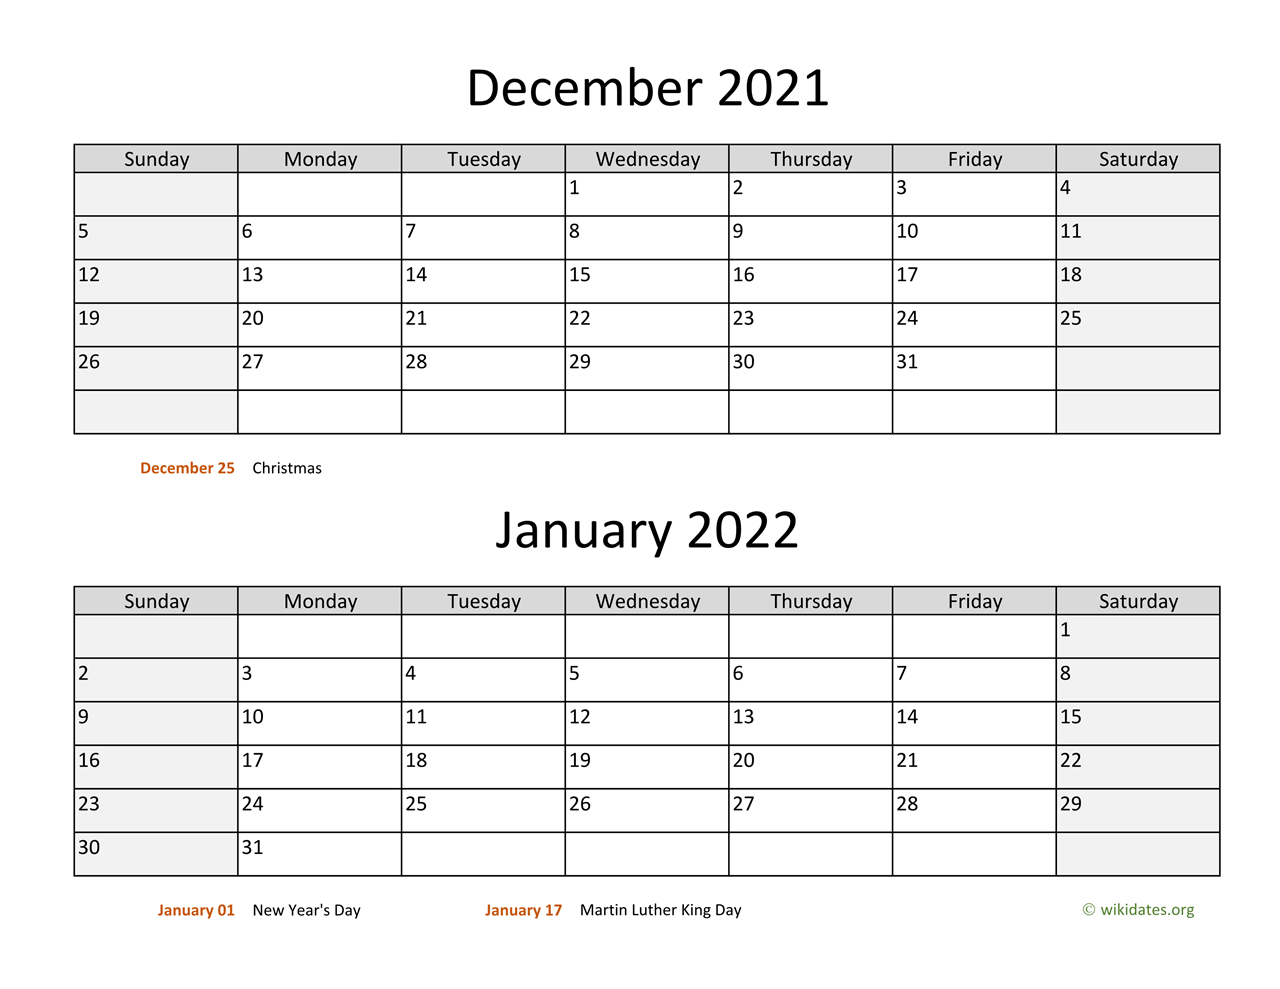 Dec 2021 Jan 2022 Calendar December 2021 And January 2022 Calendar | Wikidates.org